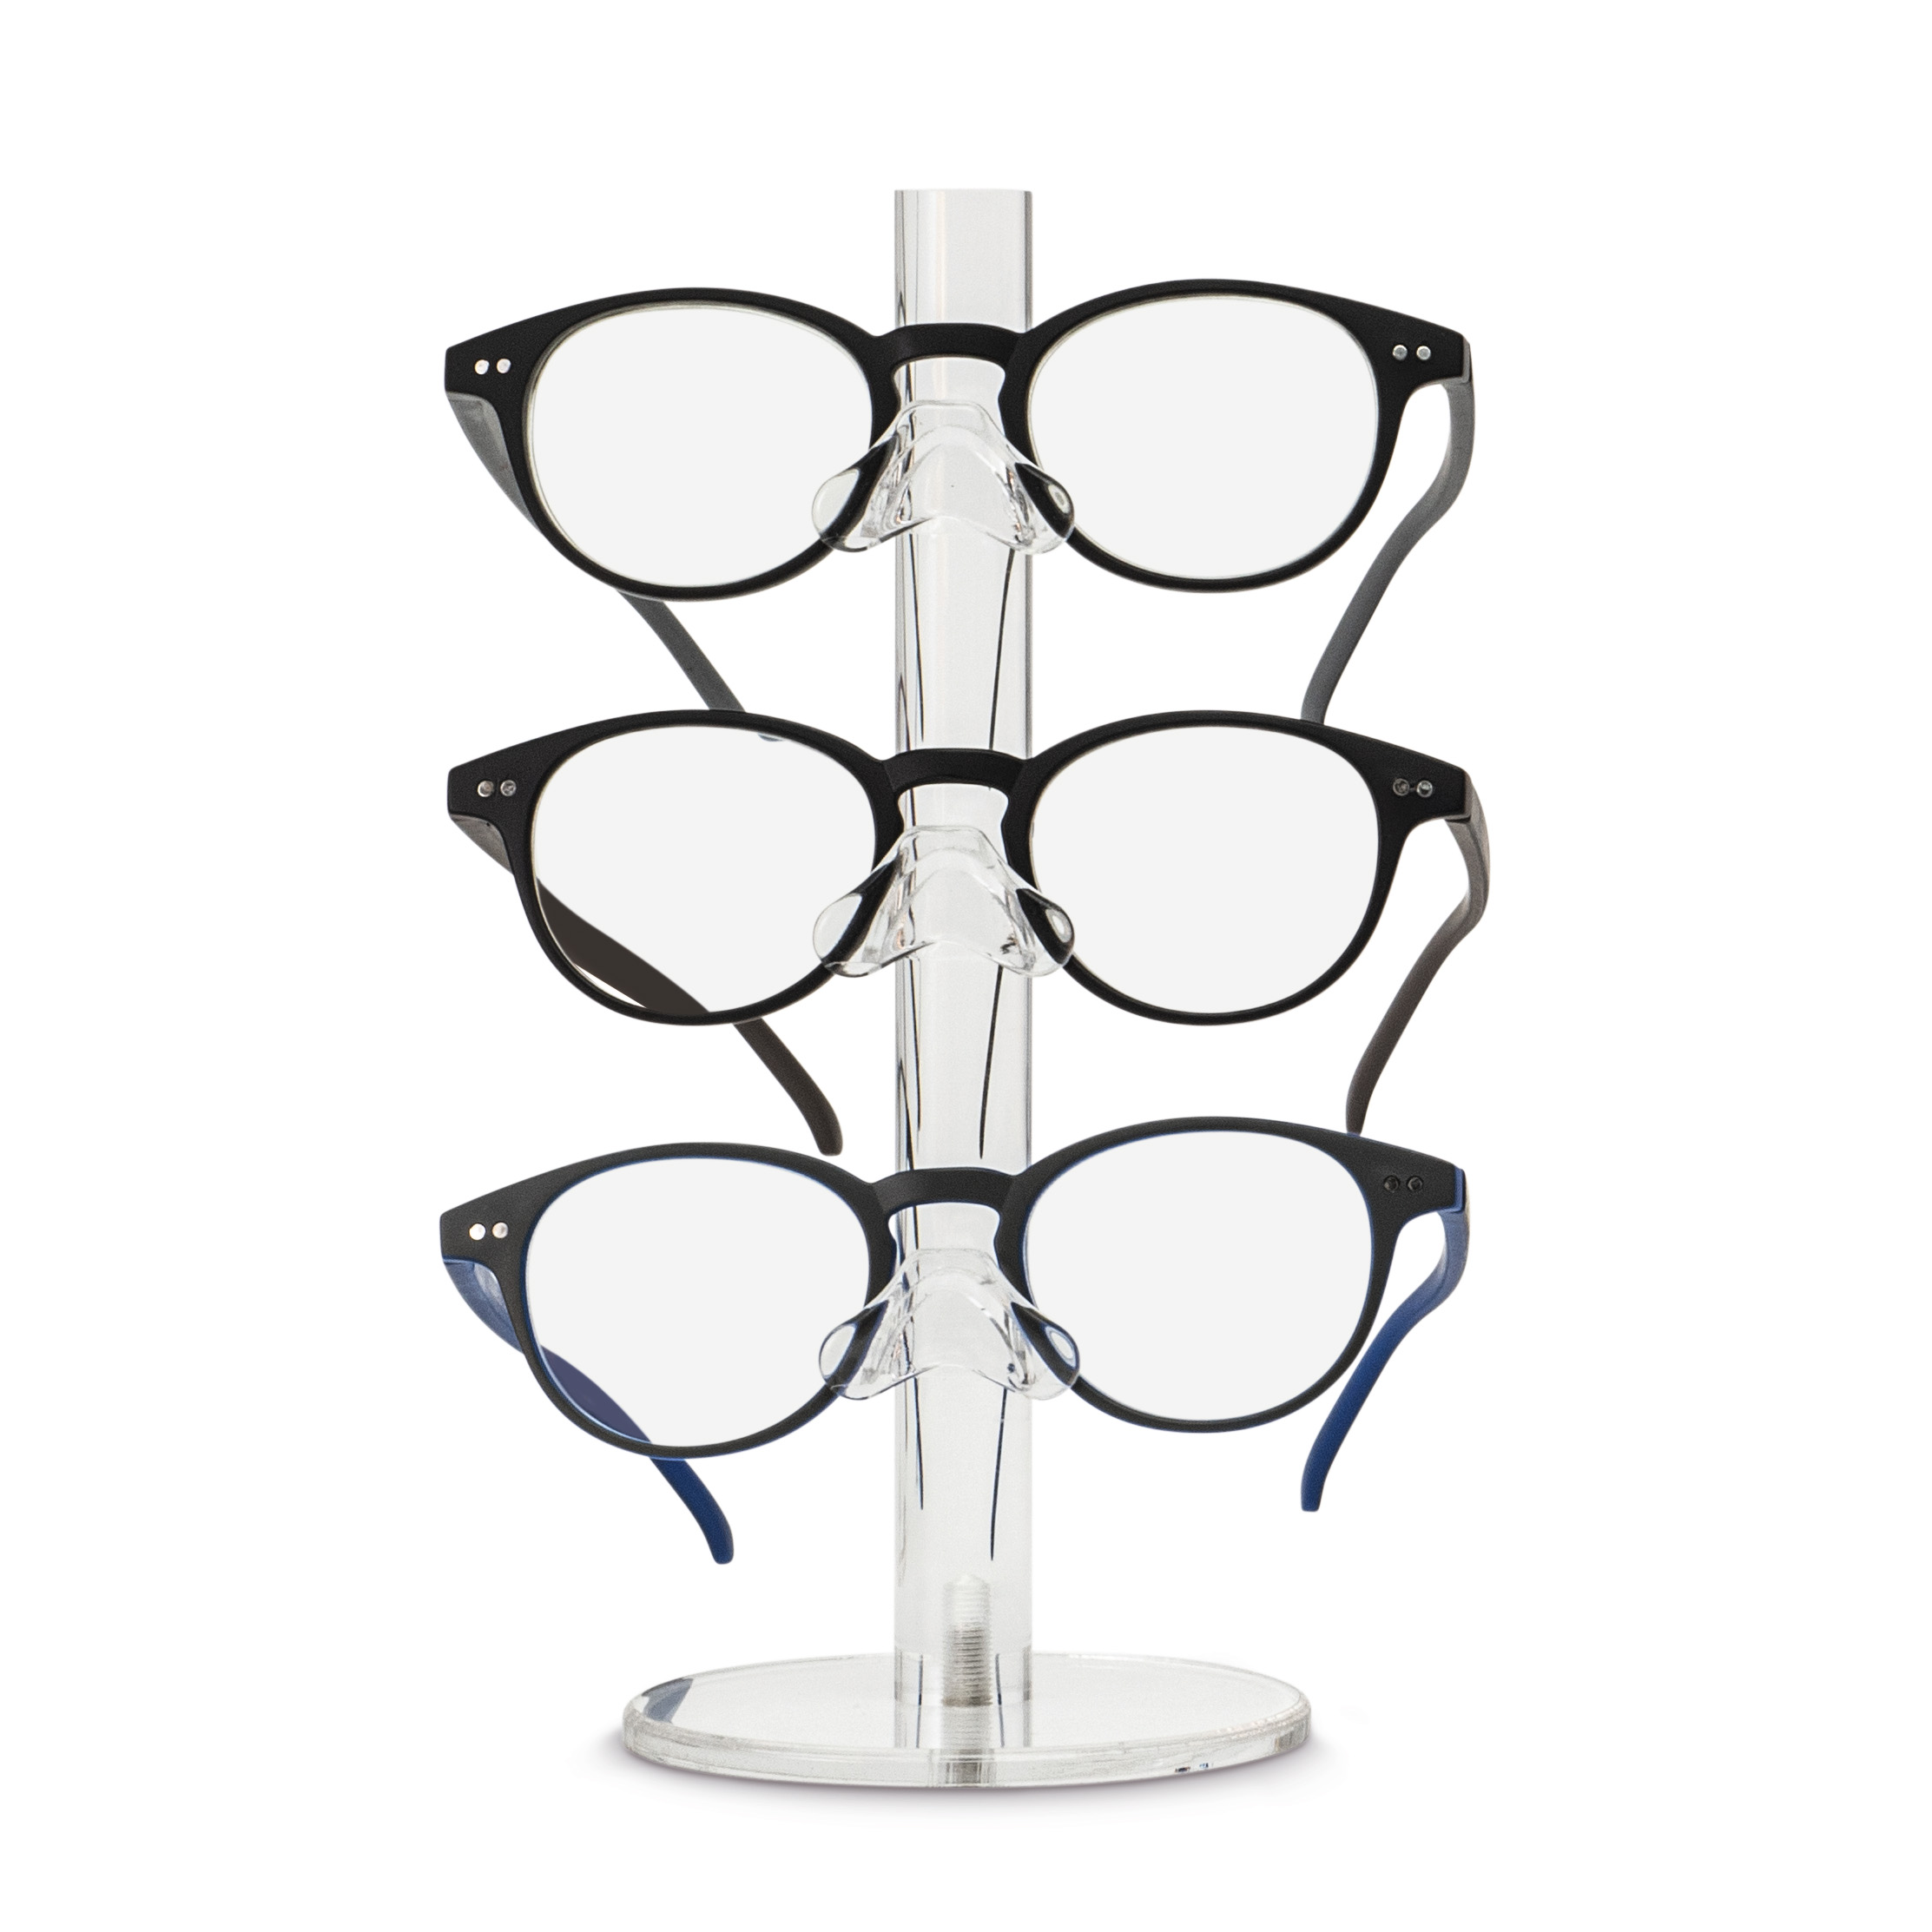 Säulen-Acryl-Display für 3 Brillen